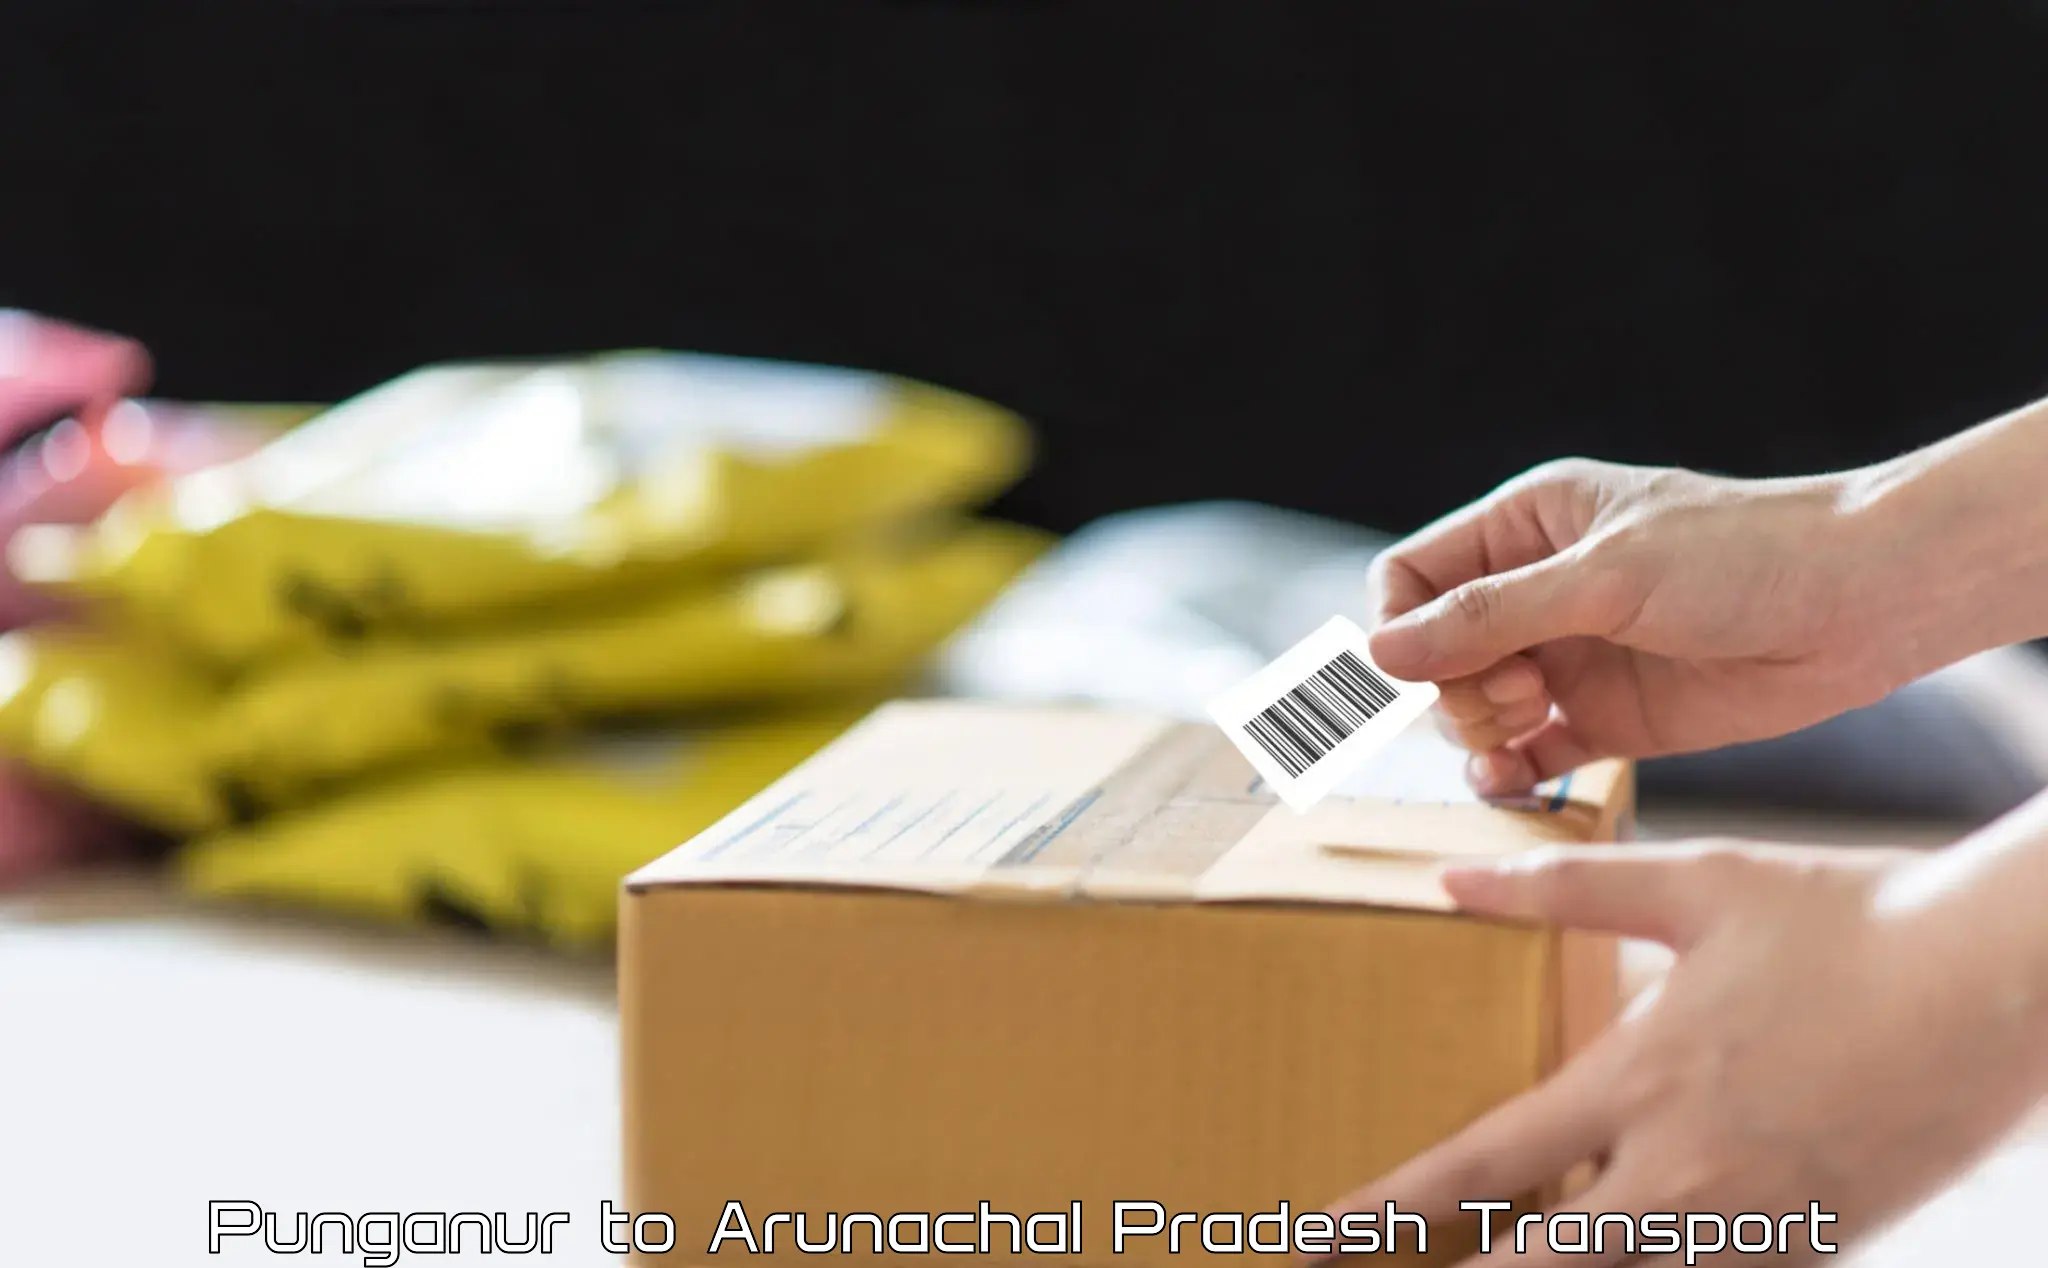 Daily parcel service transport Punganur to Arunachal Pradesh